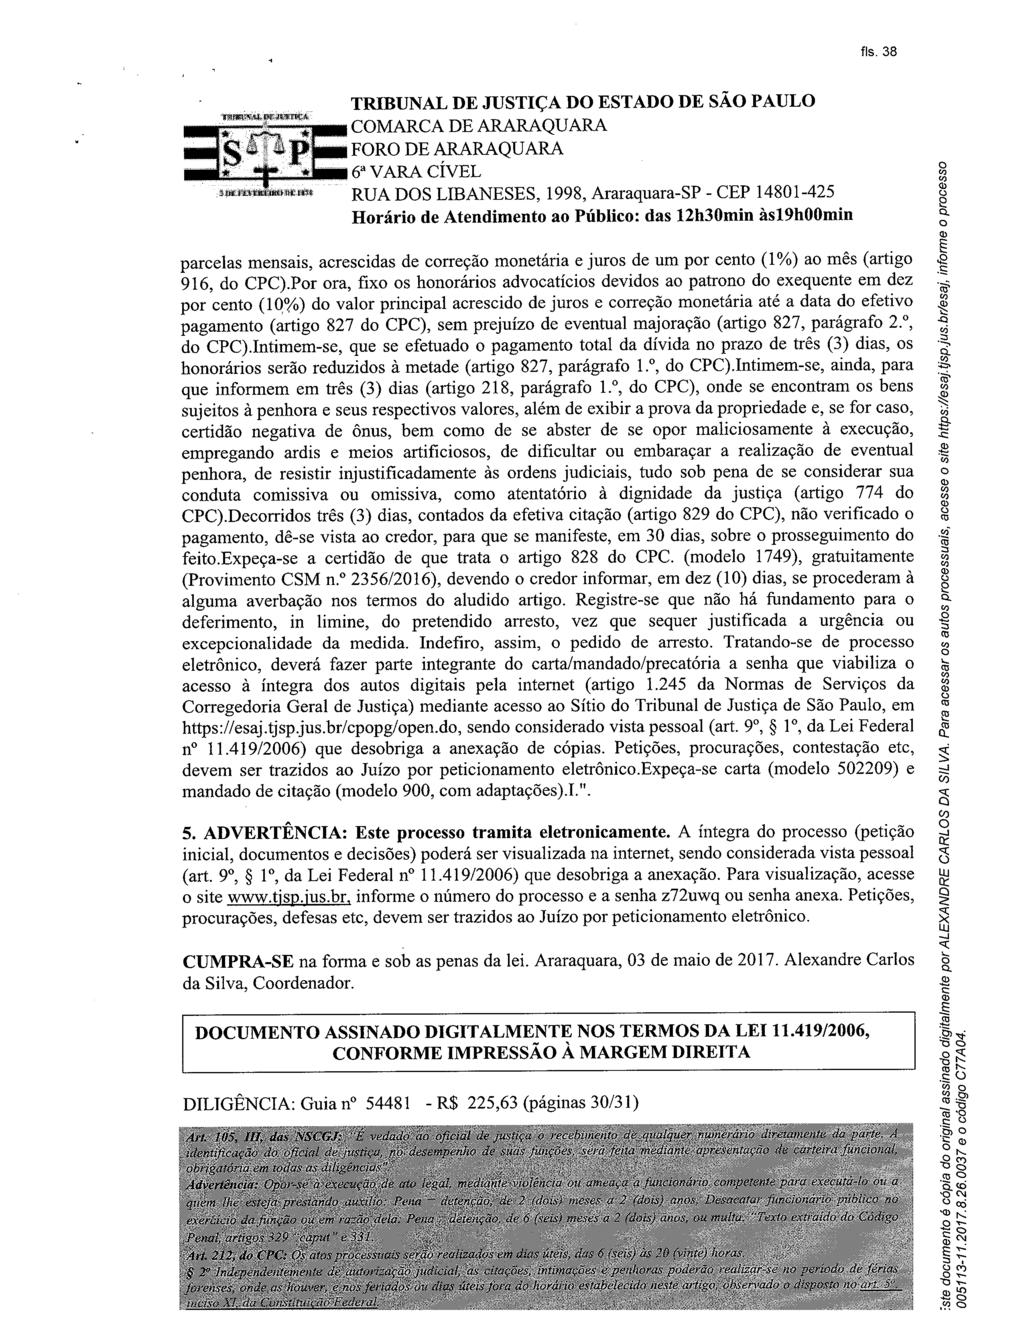 fls. 44 Este documento é cópia do original, assinado digitalmente por SUZETE PLANAS RIBEIRO, liberado nos autos em 11/05/2017 às 13:33.